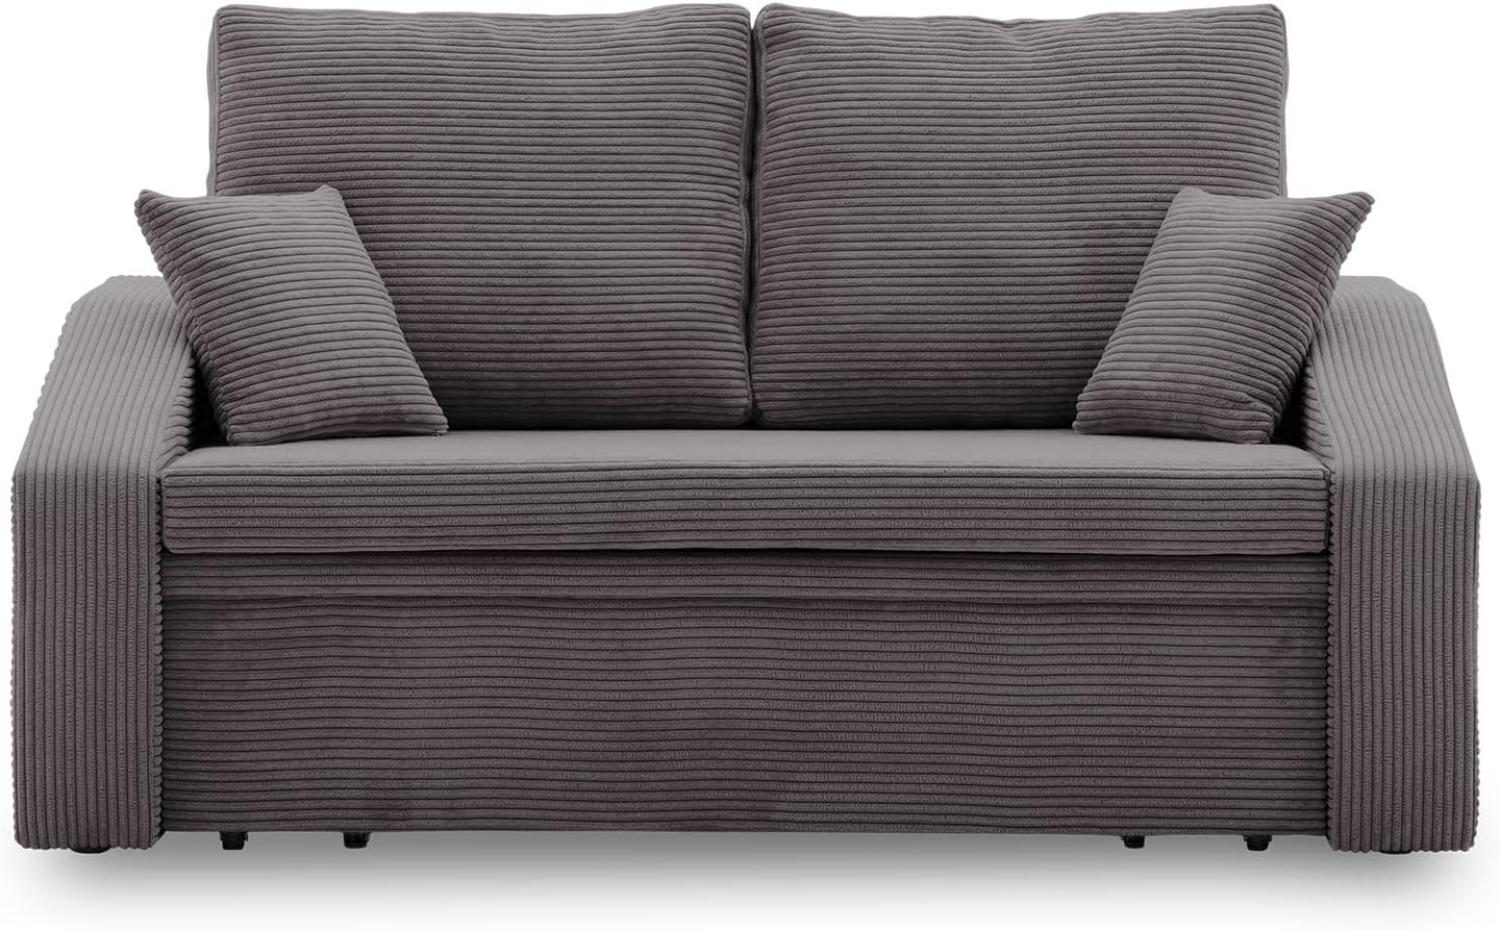 Sofa Dorma mit schlaffunktion, einfacher Aufbau, modernes Design, polstermöbel. Schlafcouch zum Wohnzimmer. Widerstandsfähiges, Minimalistisches Design (POSO 022) Bild 1